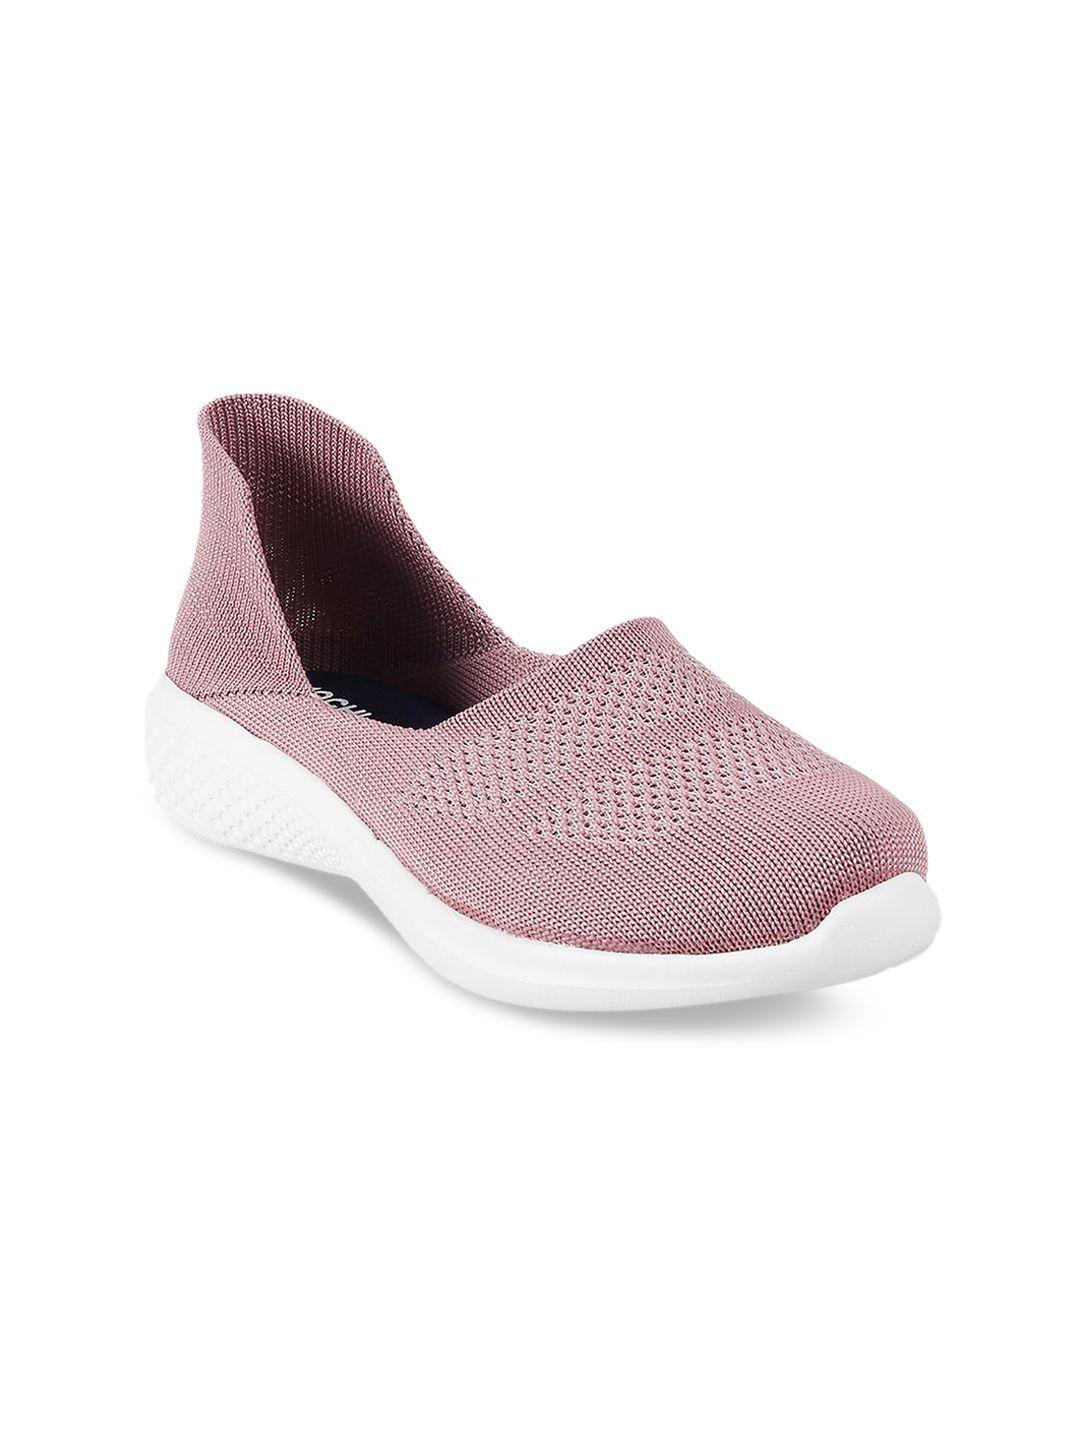 mochi-women-pink-woven-design-slip-on-sneakers